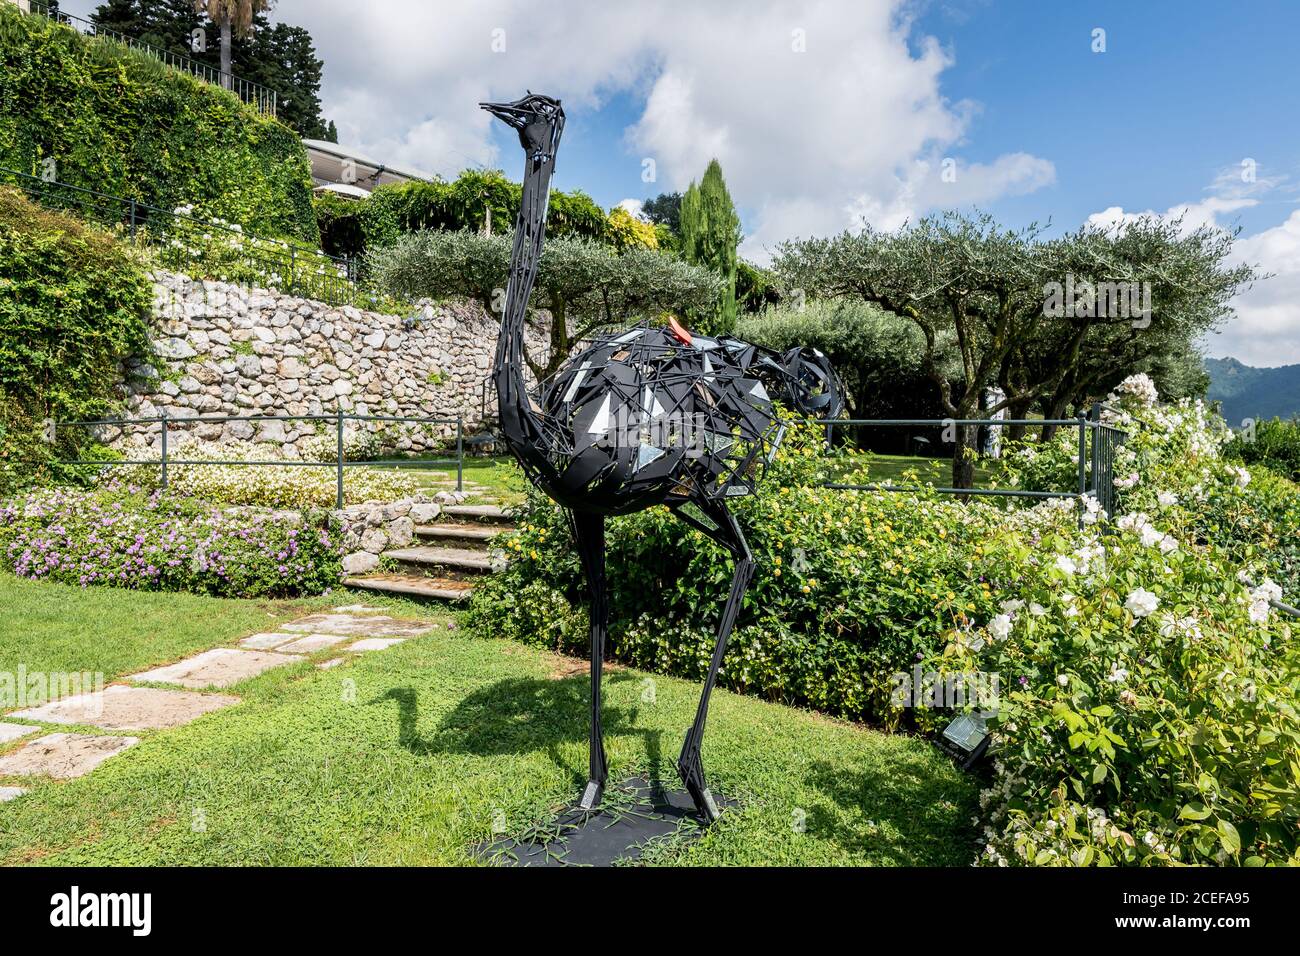 Aufnahmen von den üppigen Gärten und atemberaubende Ausblicke vom berühmten Luxushotel Belmond Hotel Caruso in Ravello, Amalfiküste, Italien. Stockfoto